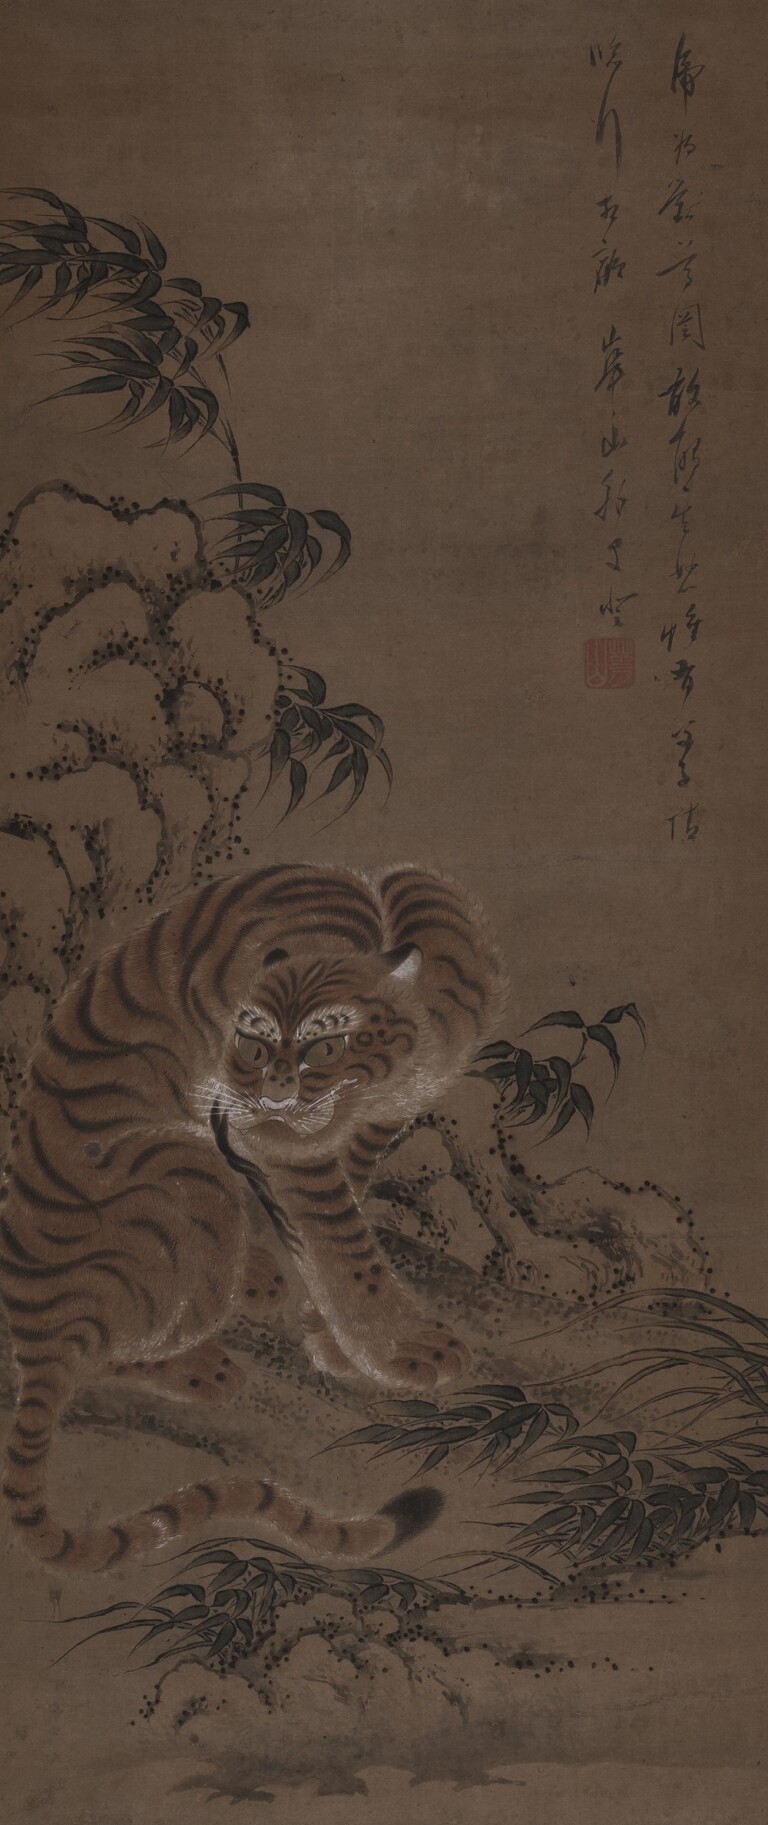 Watanabe Kazan, Una tigre si ripara sotto una roccia, 1810-19, dipinto a inchiostro e colori su carta, 125 x 52,5 cm